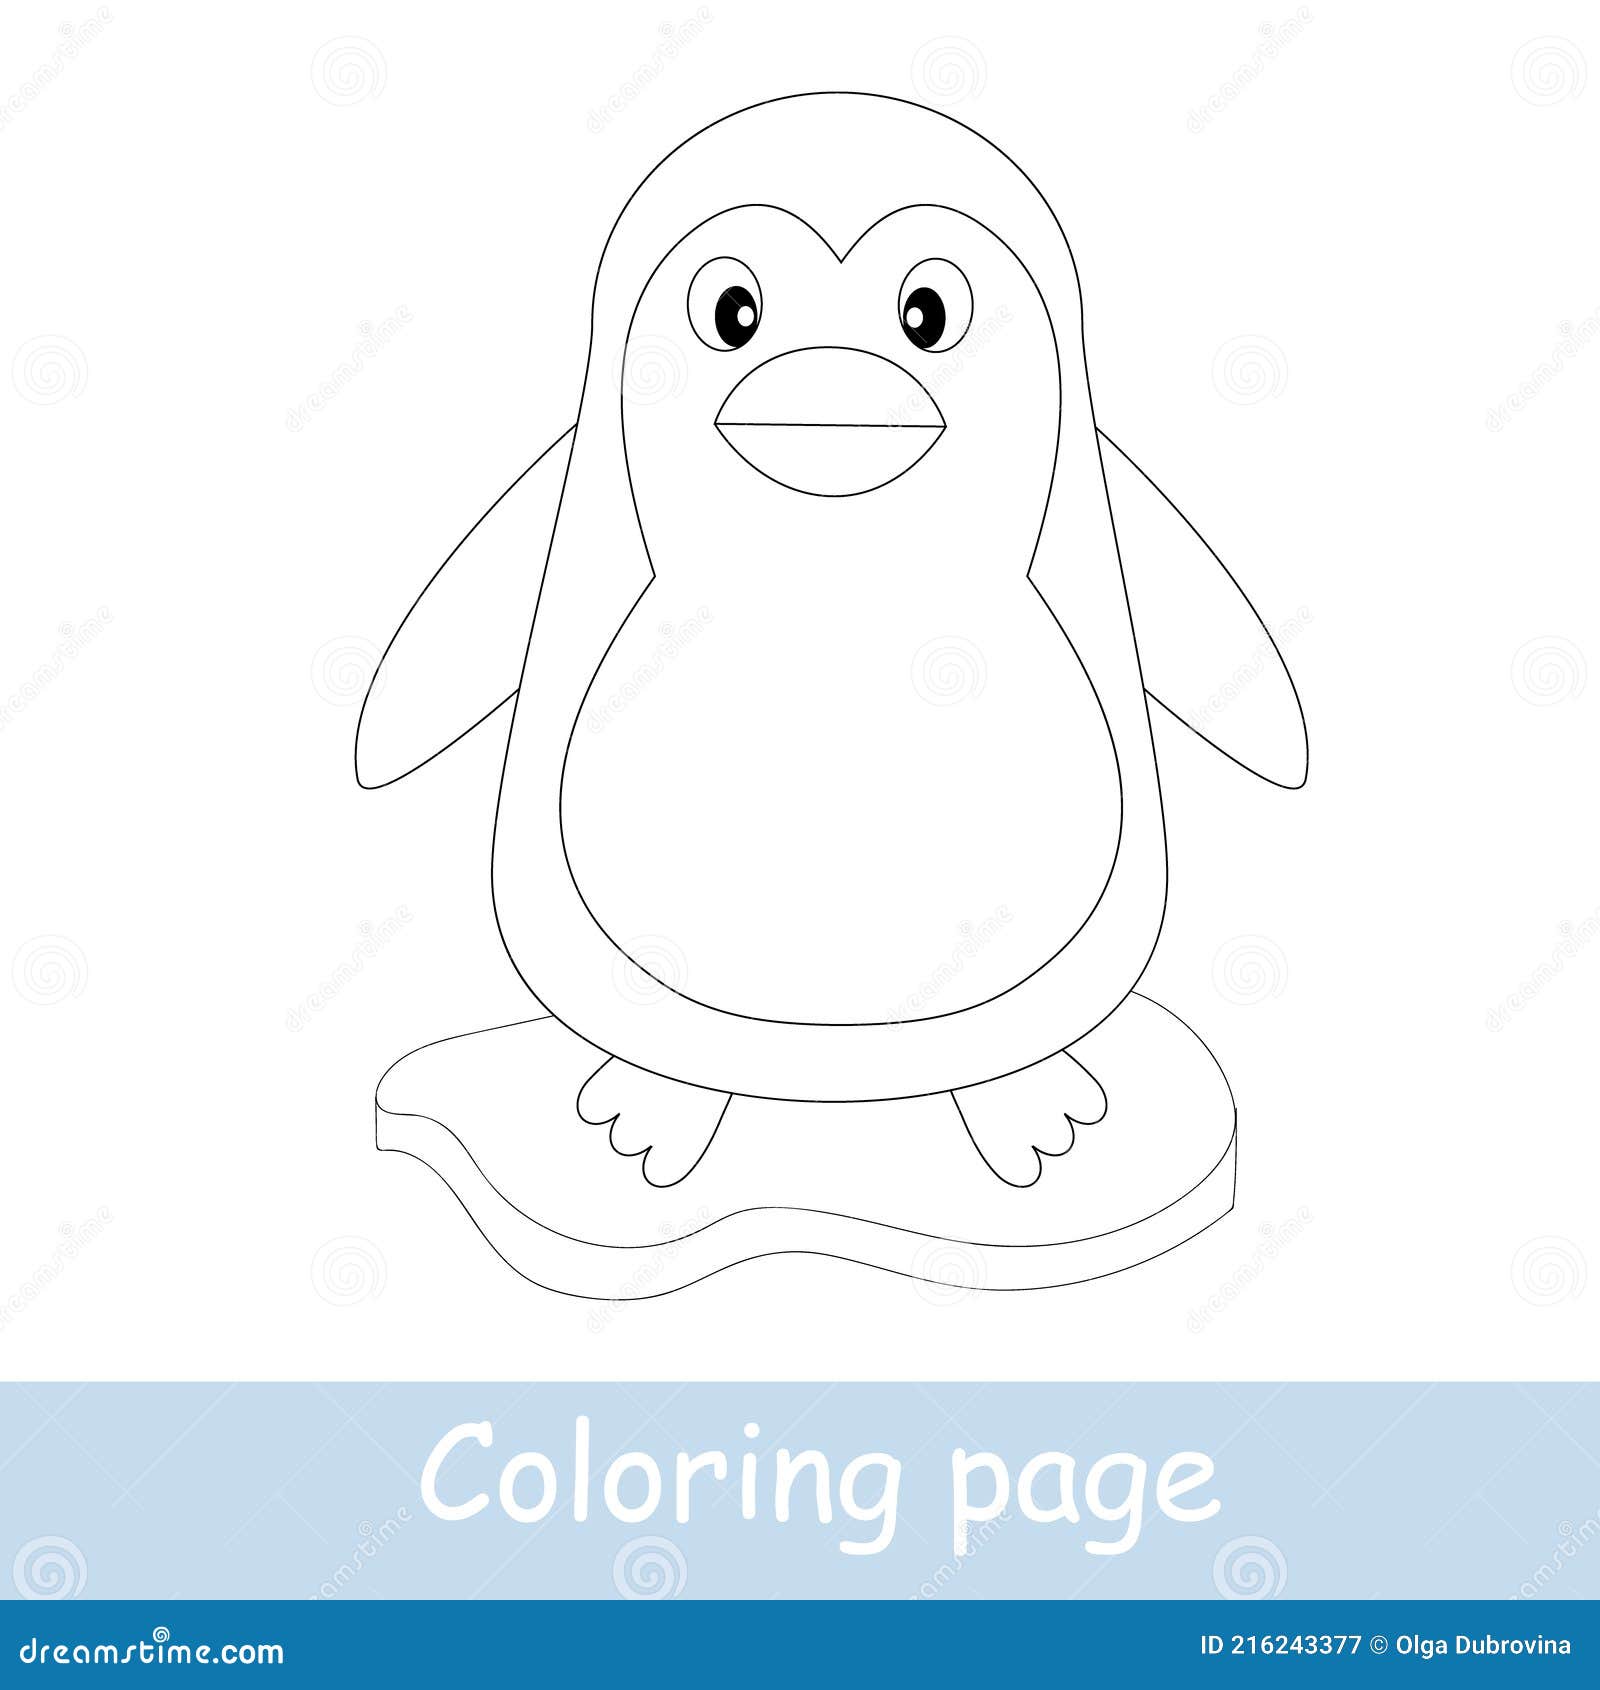 Dibujos para niños para colorear de kawaii - Kawaii - Just Color Crianças :  Páginas para colorir para crianças